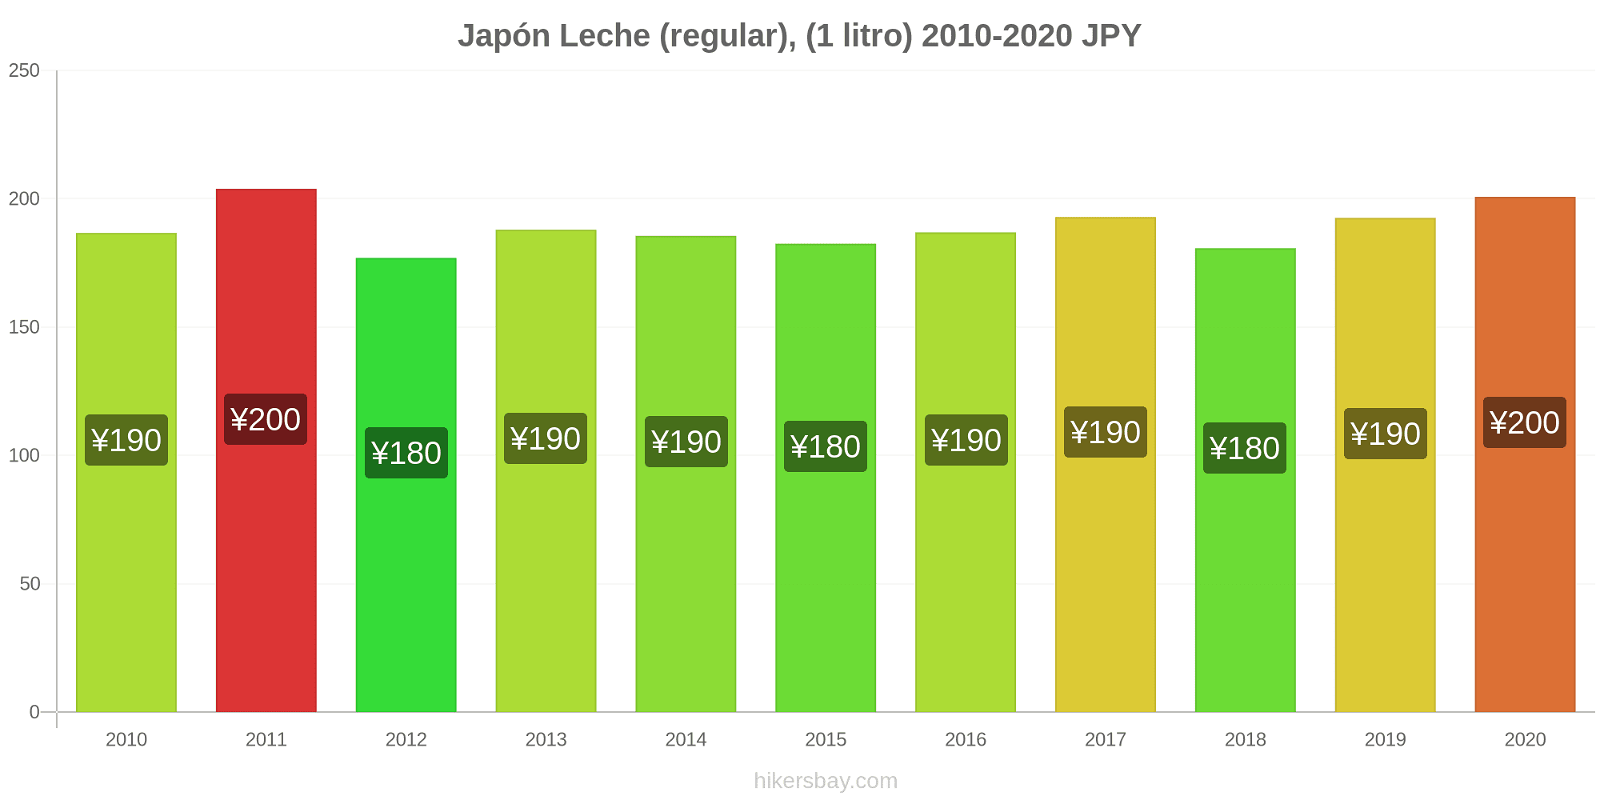 Japón cambios de precios Leche (Regular), (1 litro) hikersbay.com